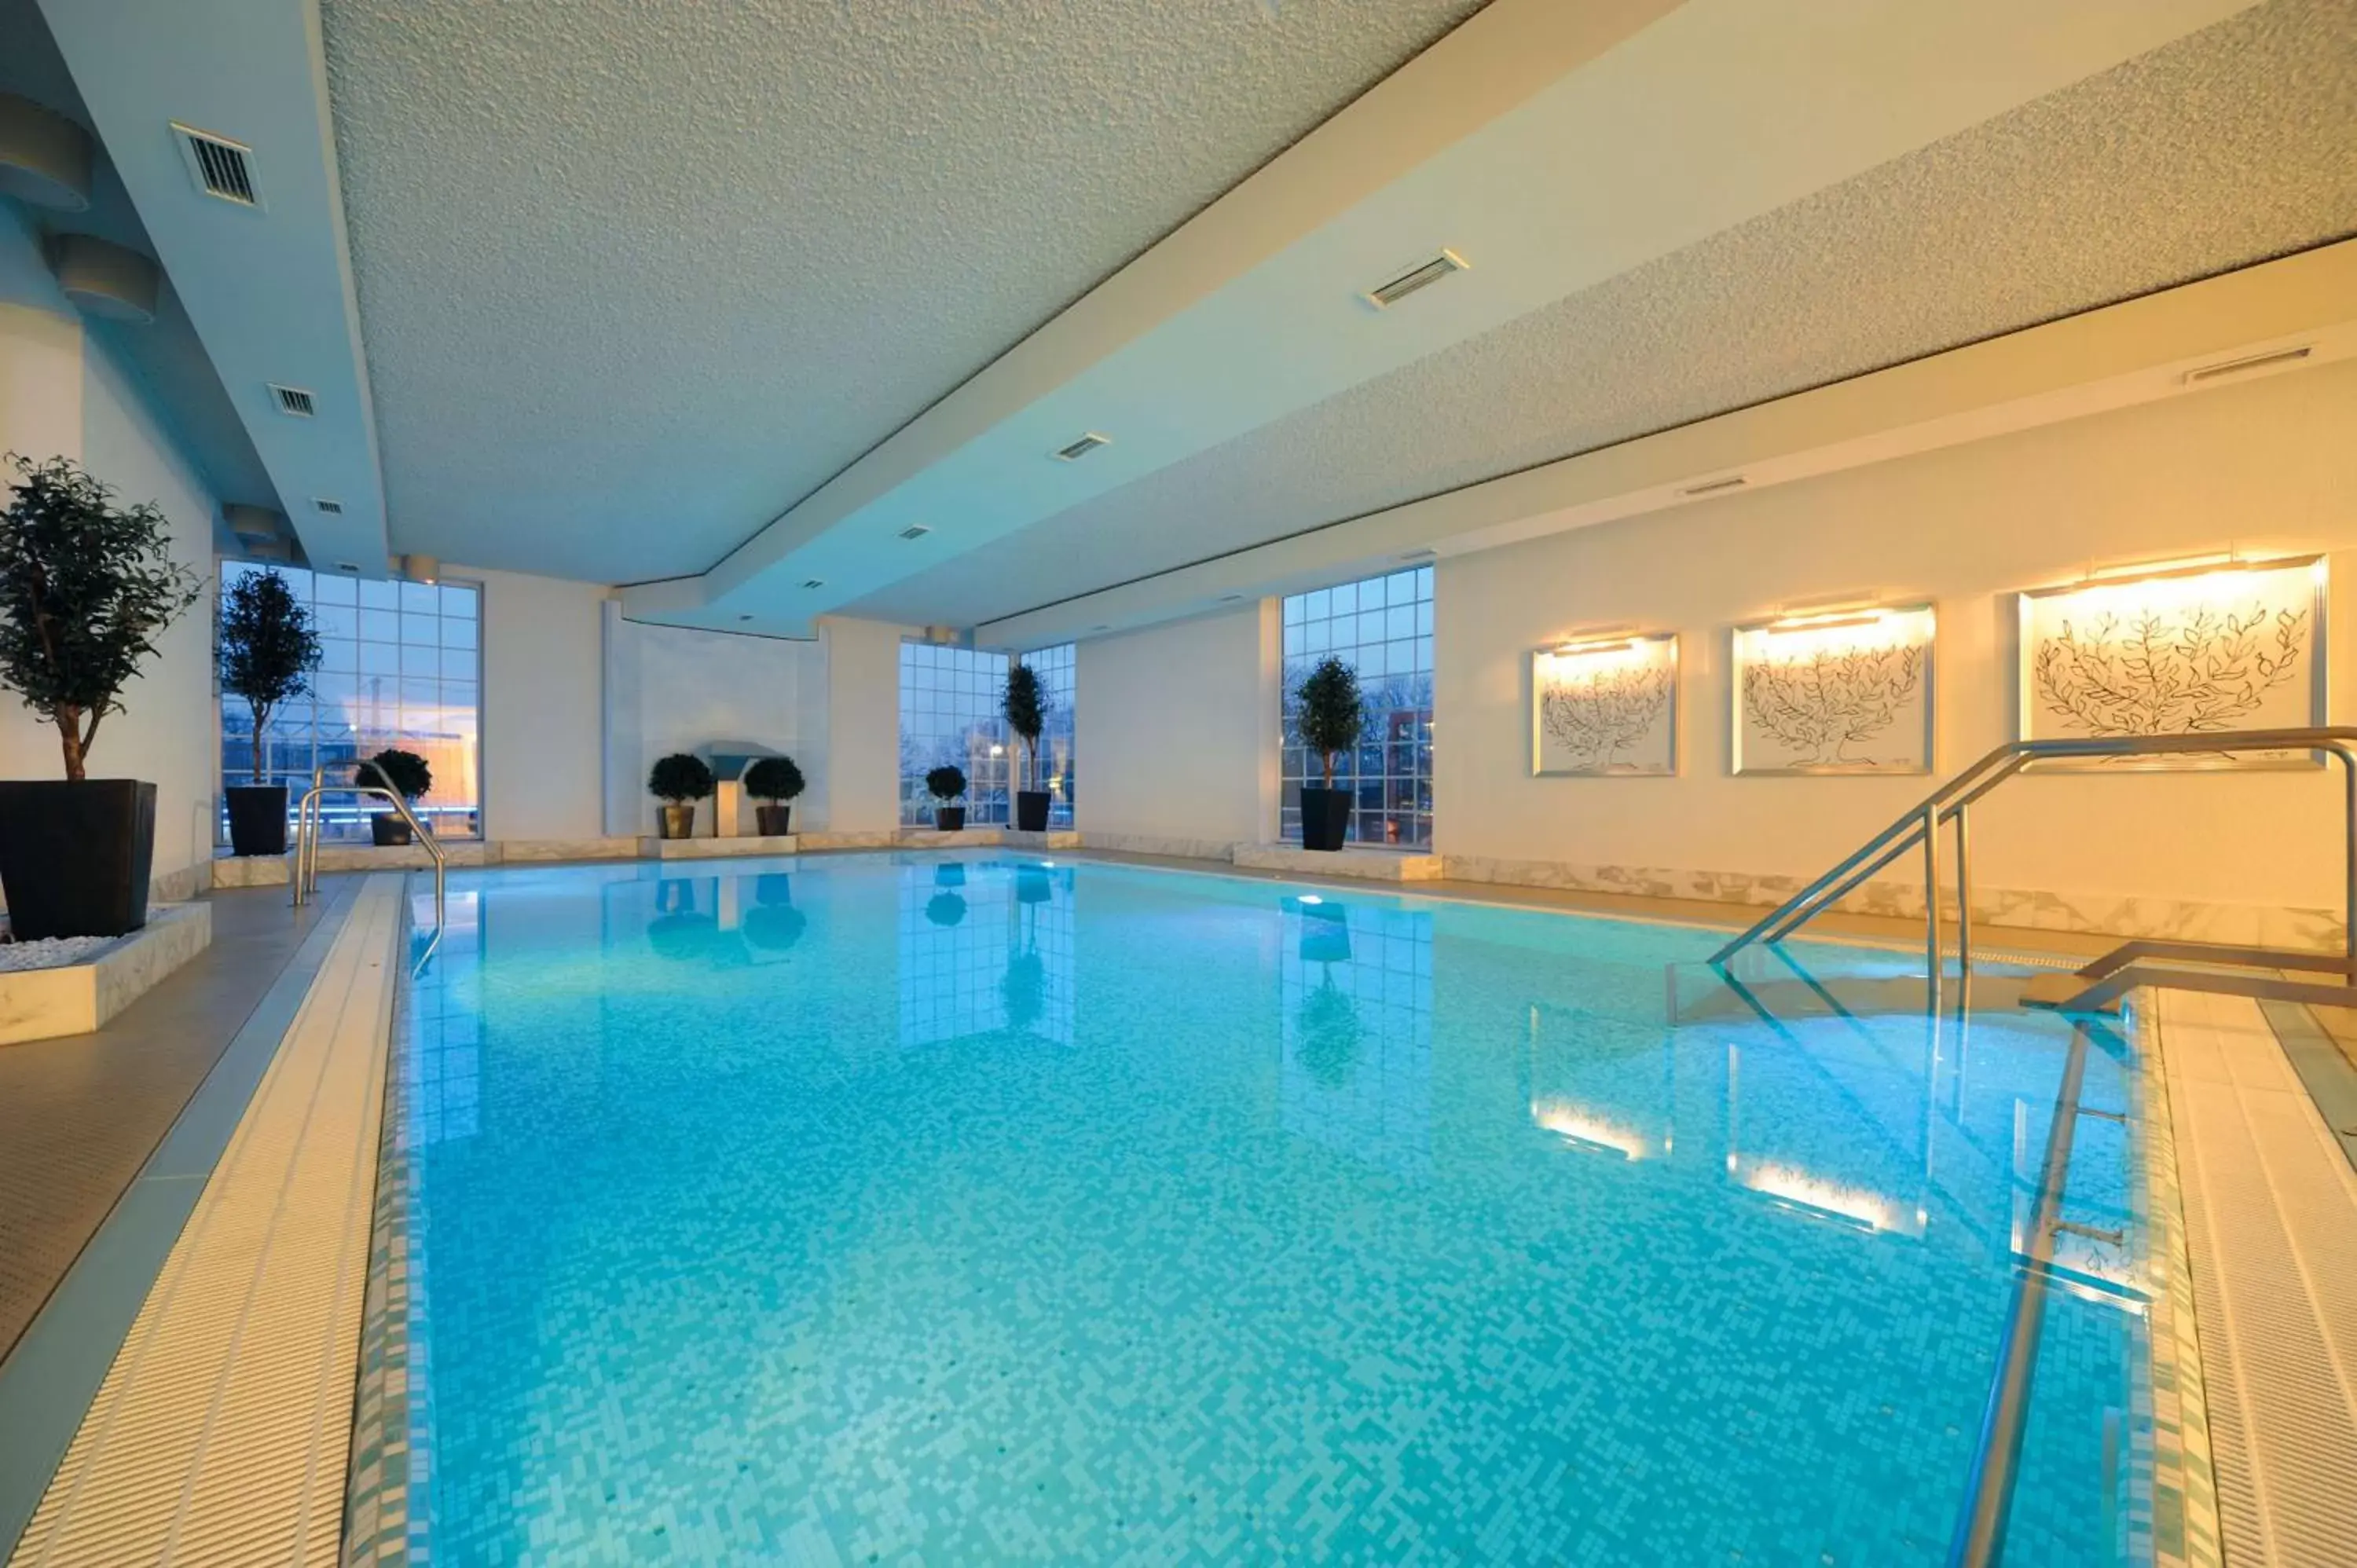 On site, Swimming Pool in Best Western Premier Parkhotel Kronsberg